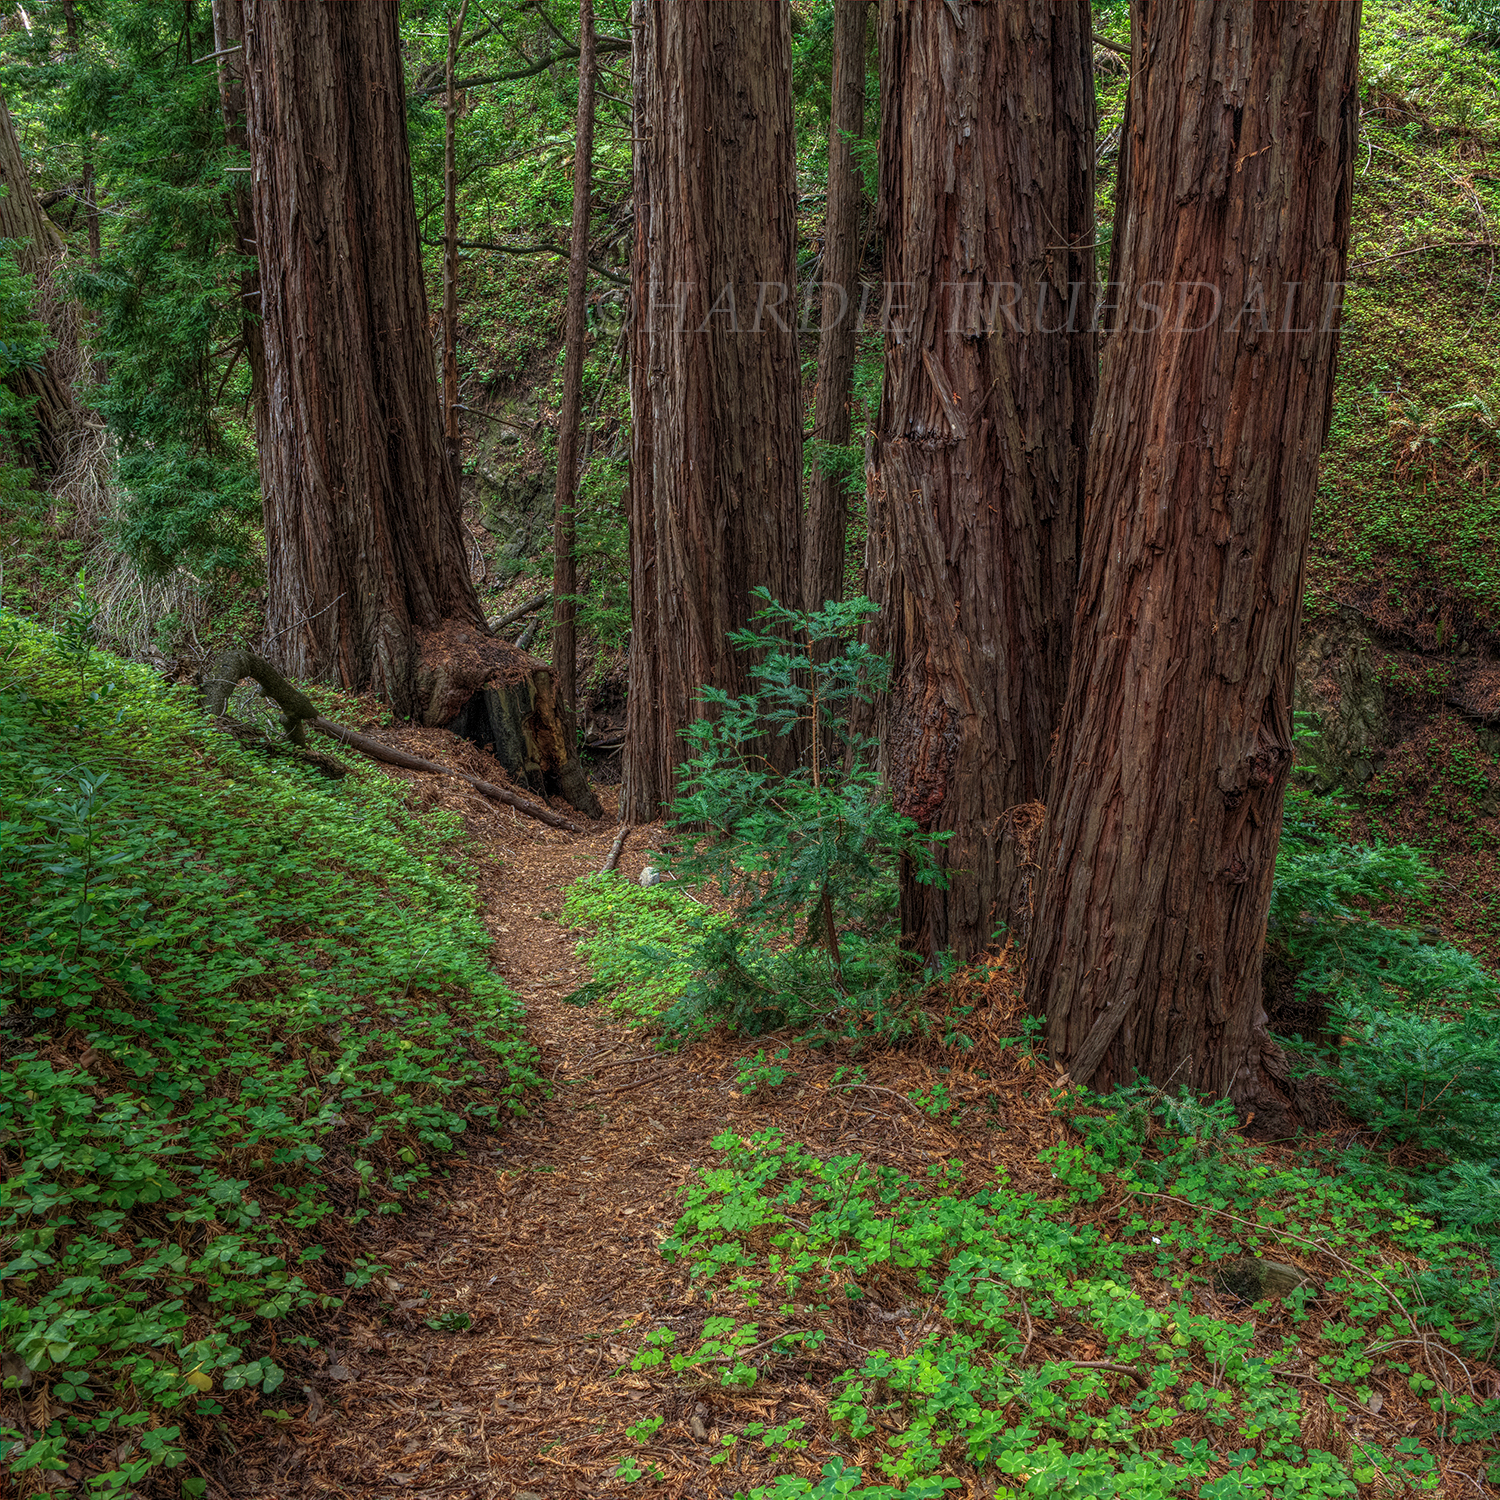 CA#179 "Redwoods Grove, Garapatta"